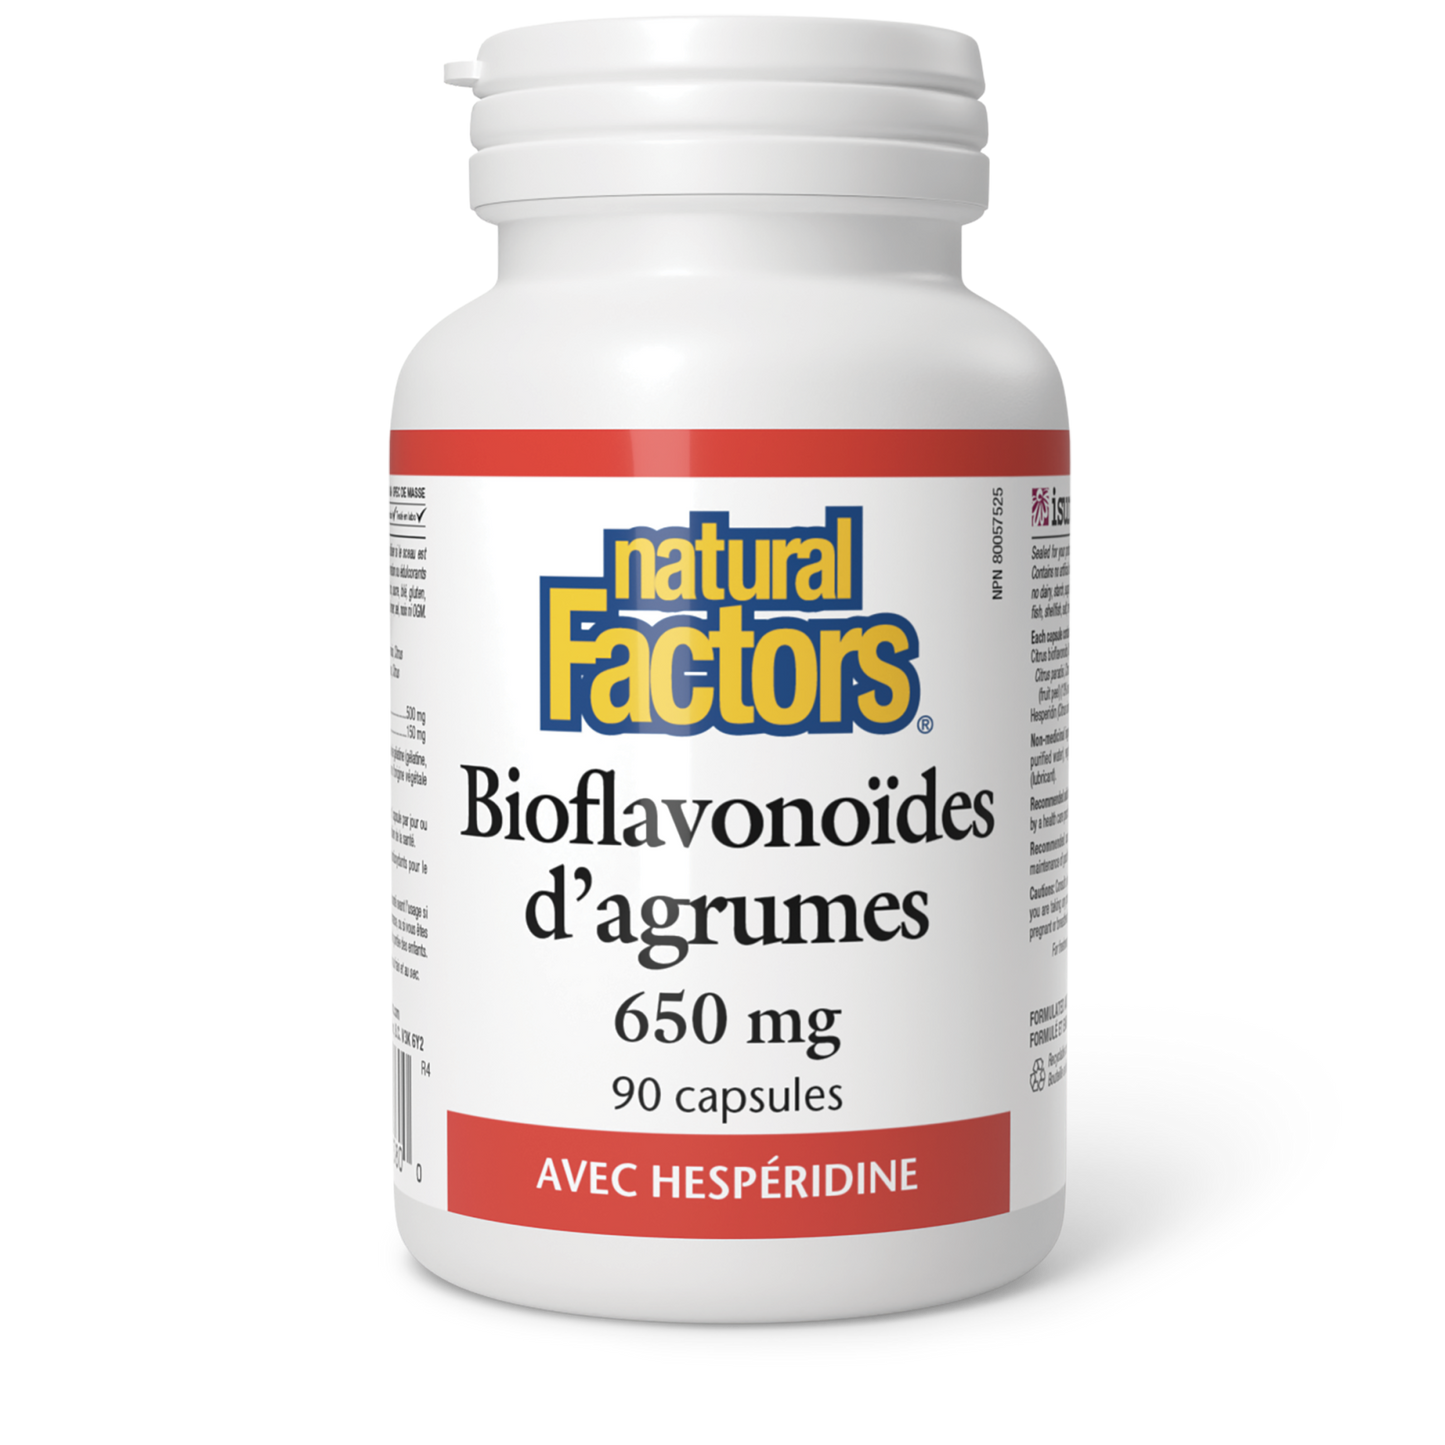 Bioflavonoïdes d’agrumes avec hespéridine 650 mg, Natural Factors|v|image|1380